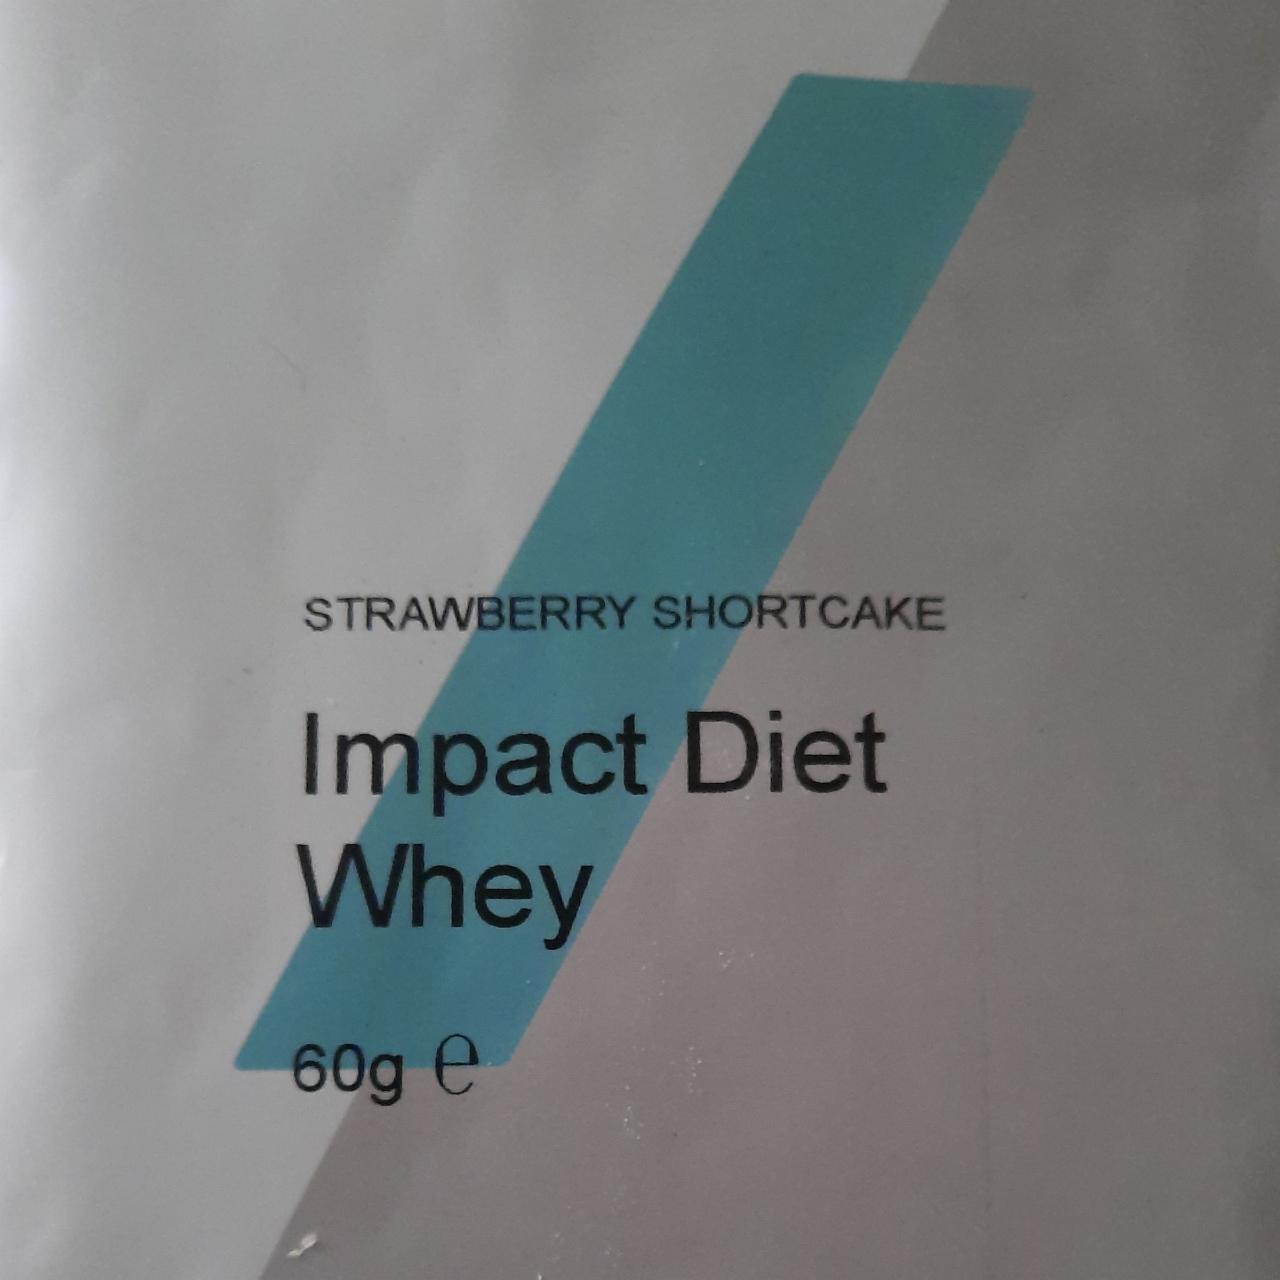 Fotografie - Impact diet whey strawberry shortcake flavour Myprotein